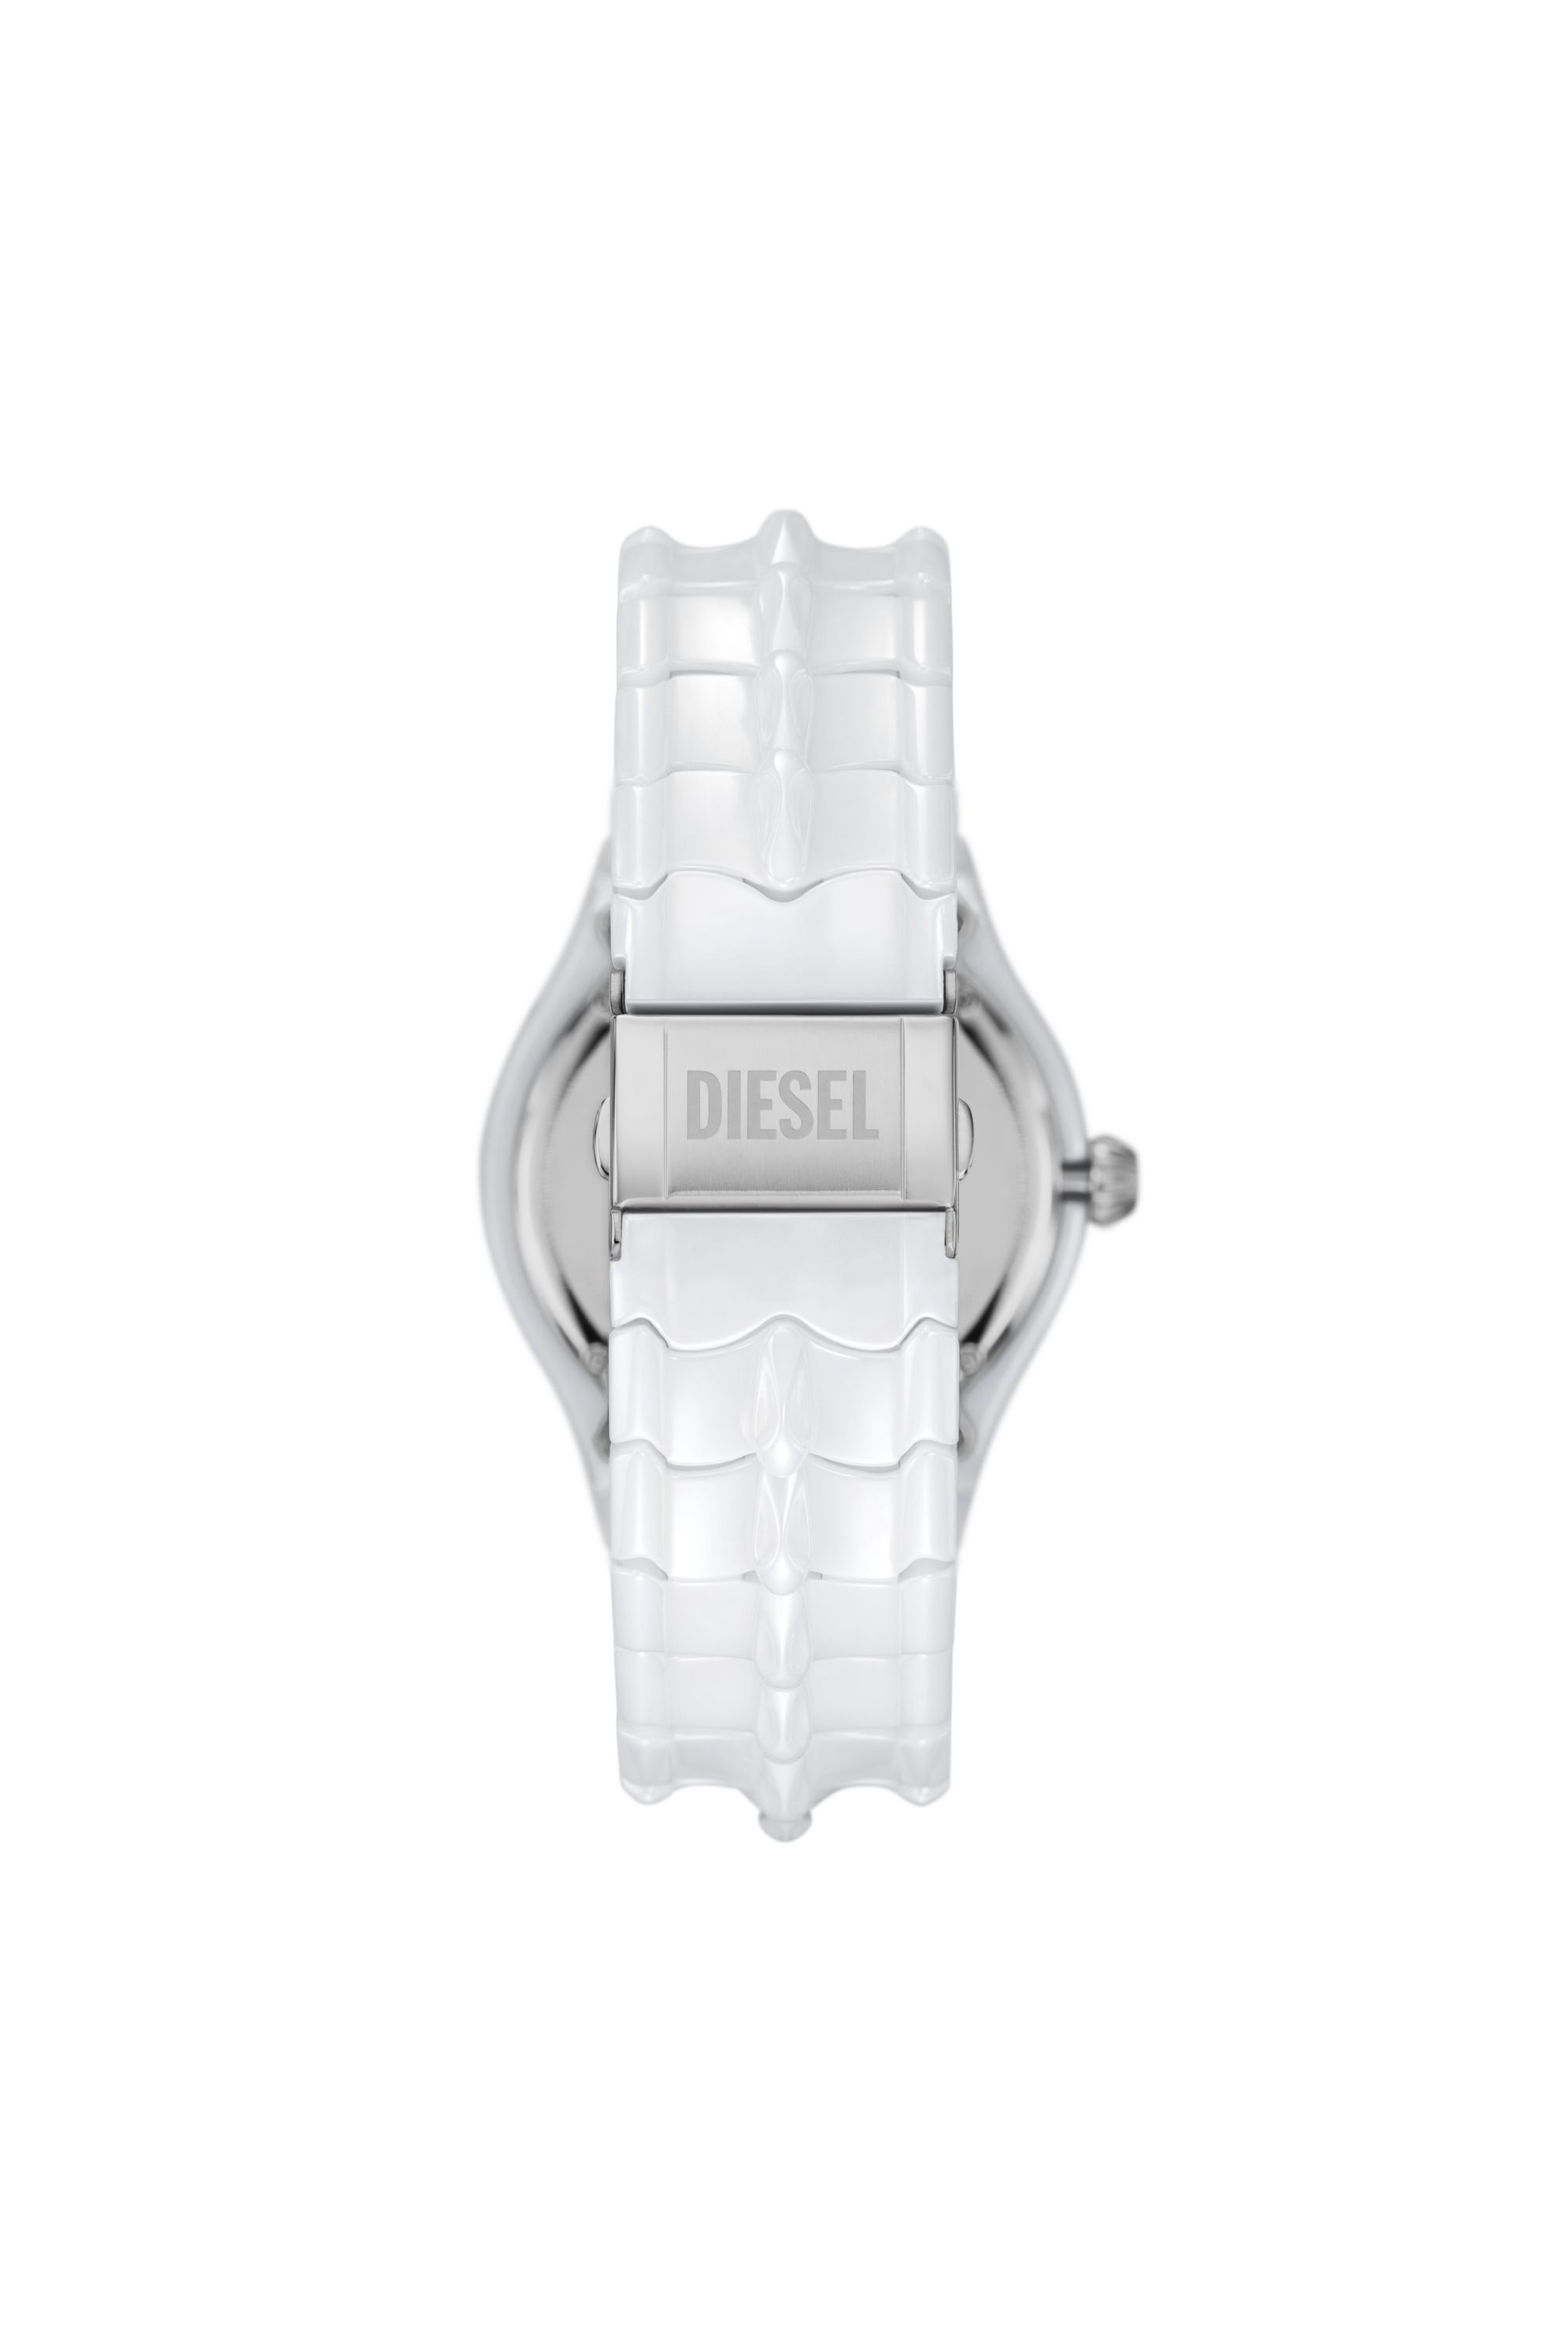 Diesel - DZ2197, Blanc - Image 2